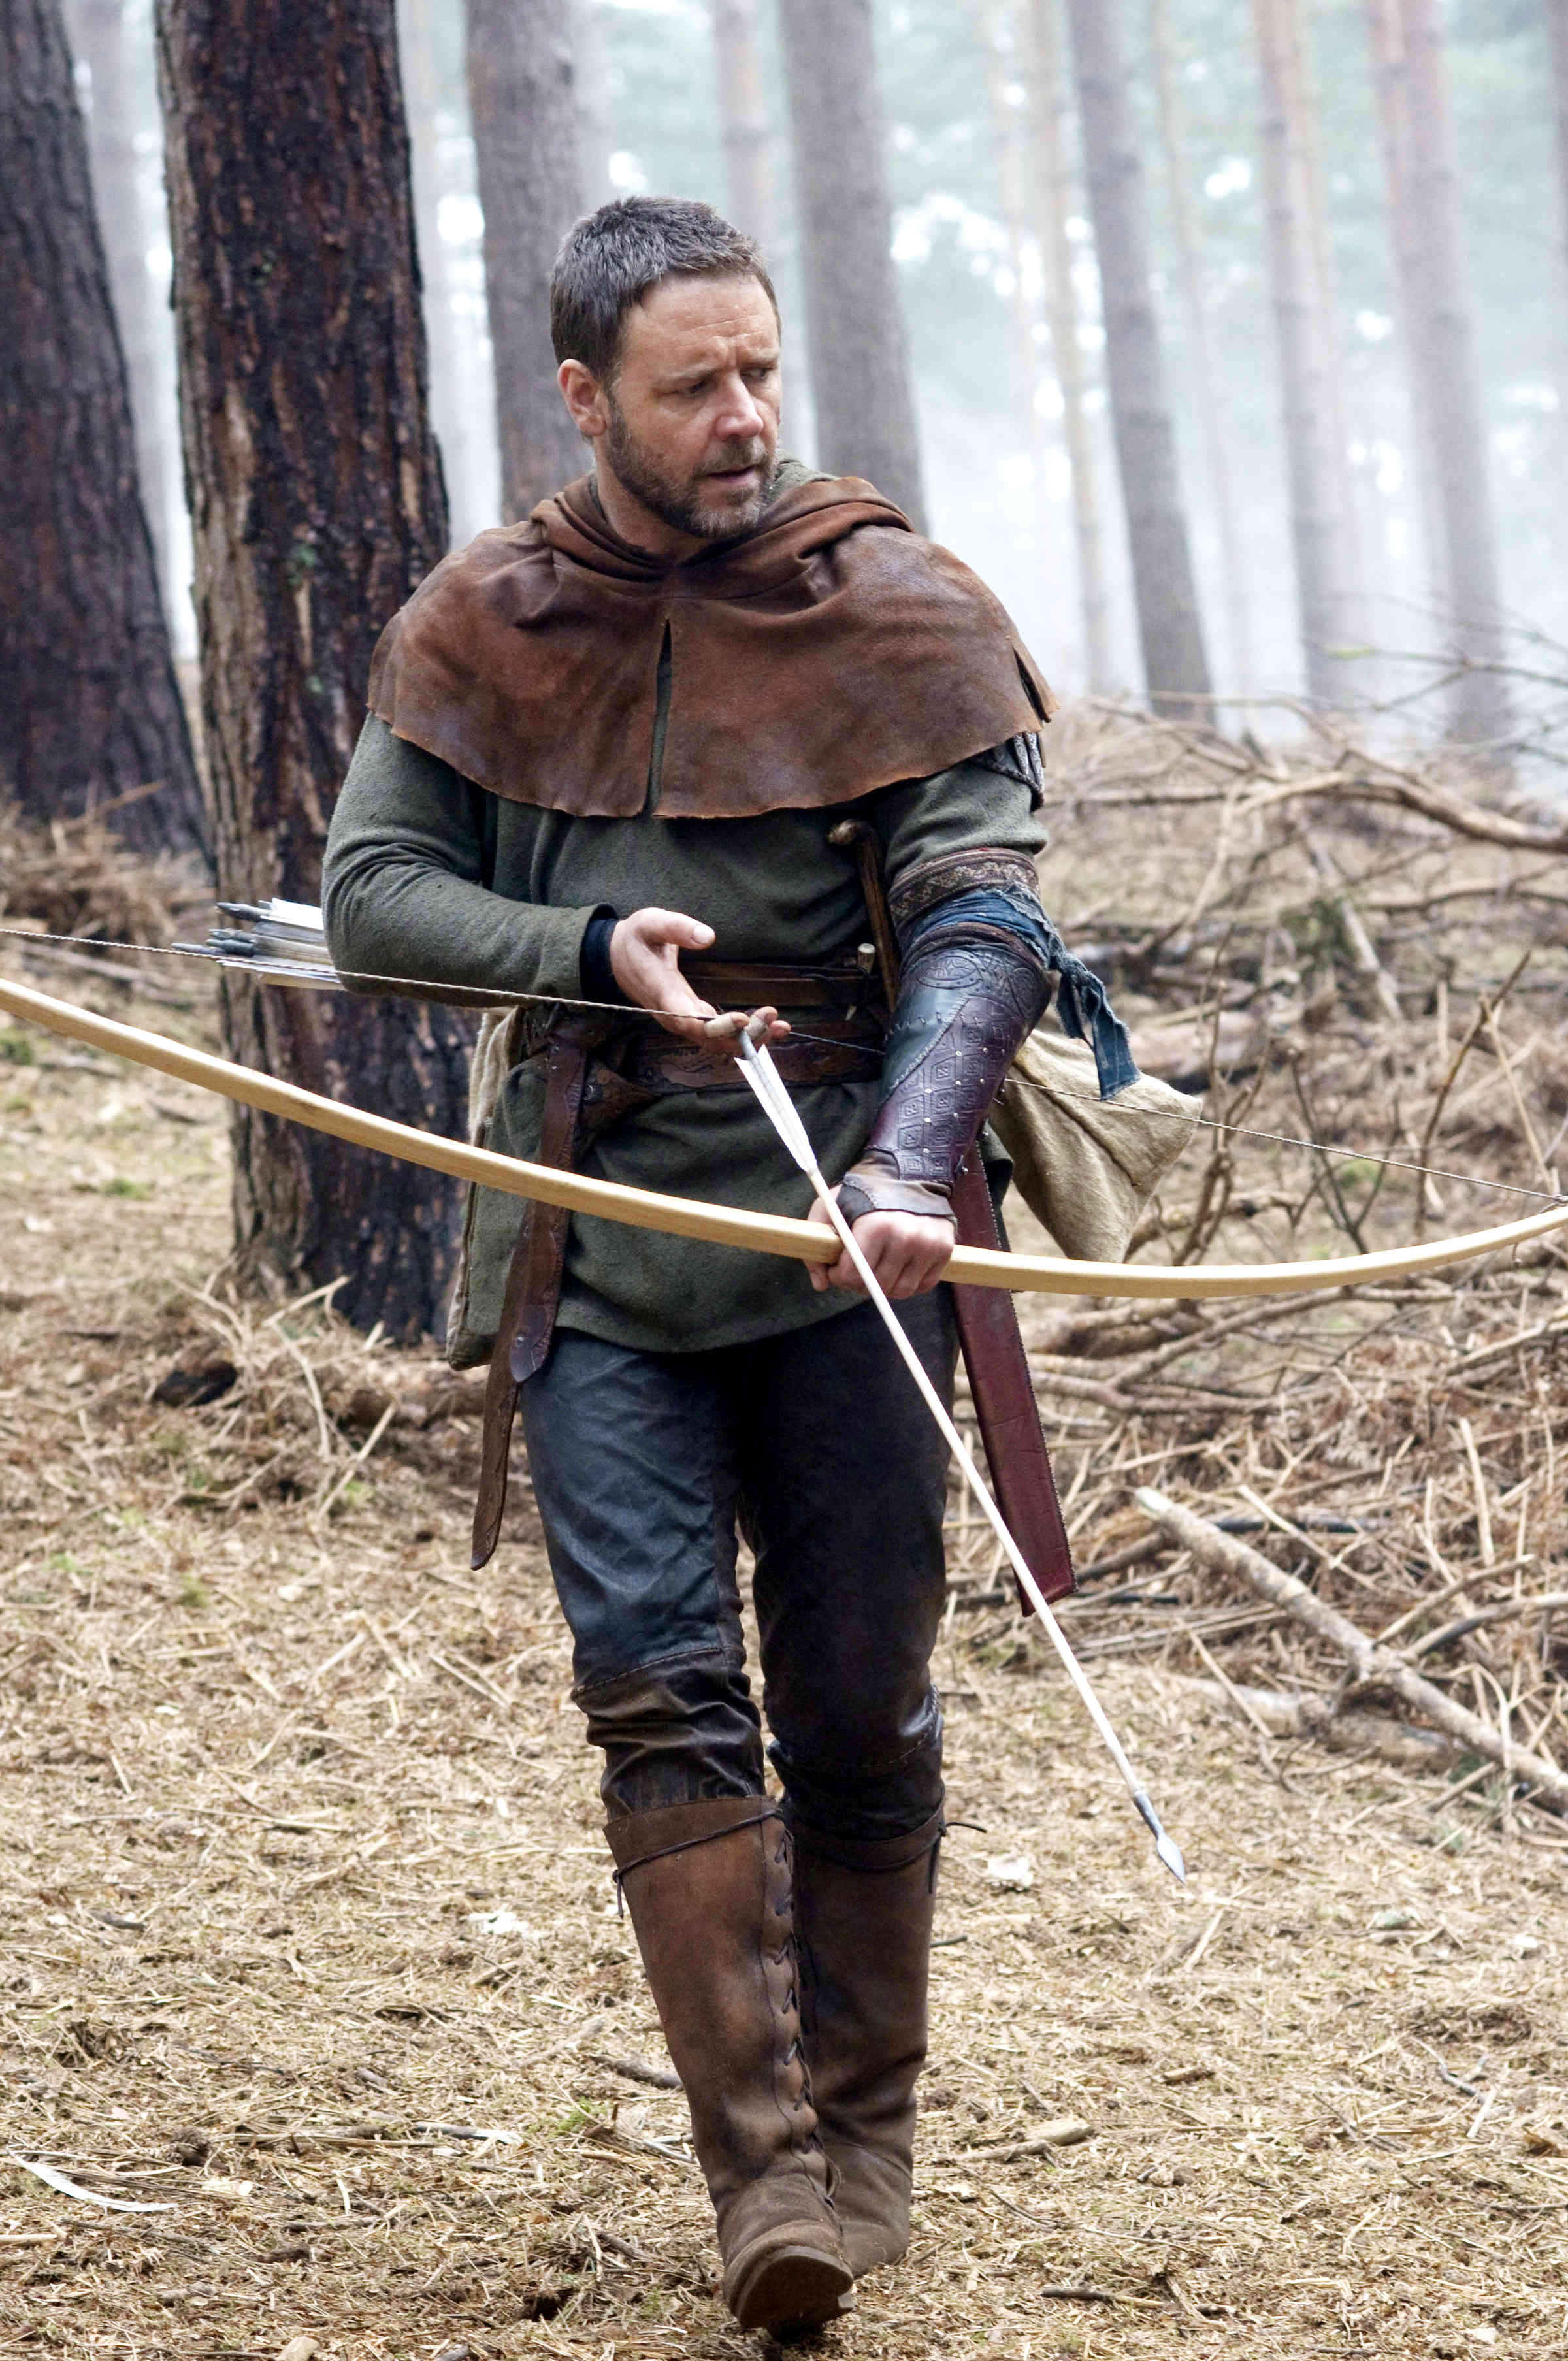 Robin Hood, bow (weapon), Russell Crowe - desktop wallpaper